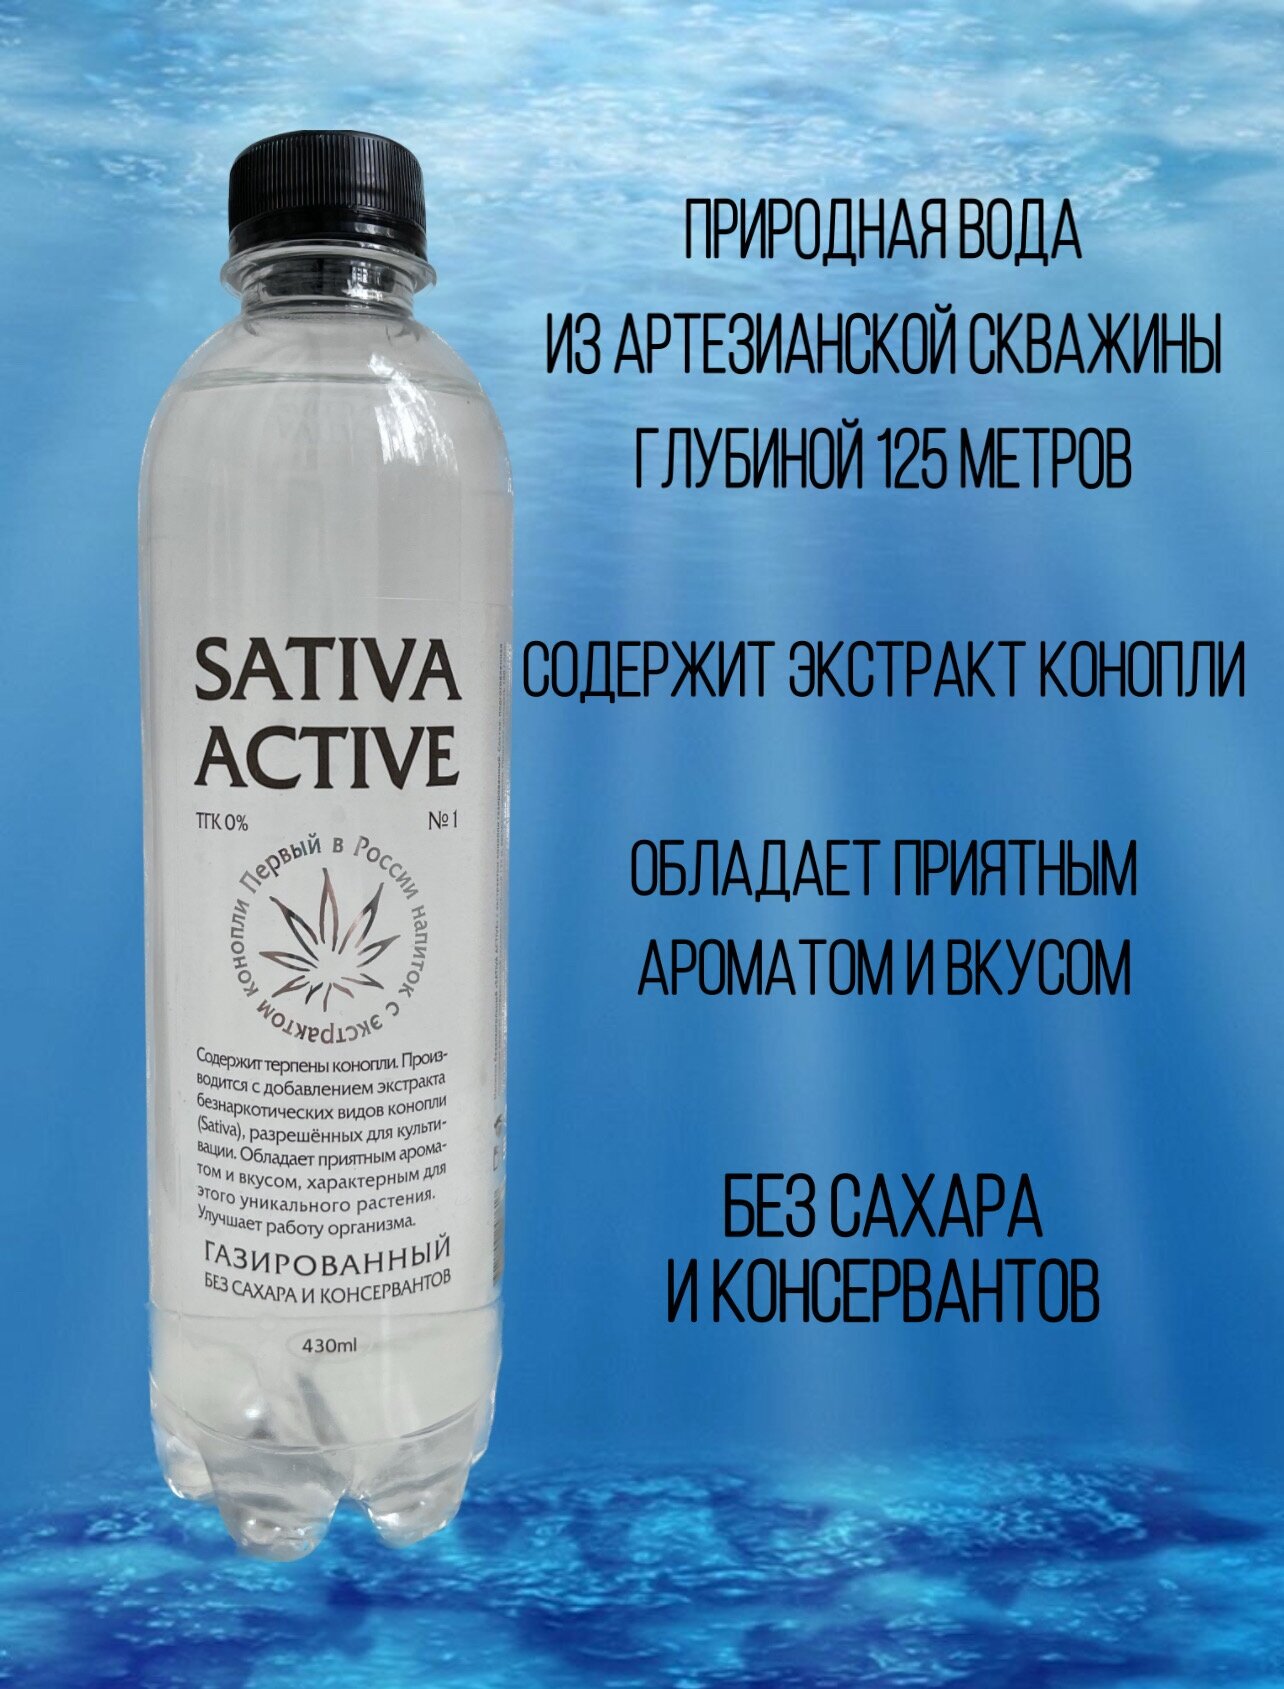 Конопляная вода SATIVE ACTIVE Премиум - фотография № 2